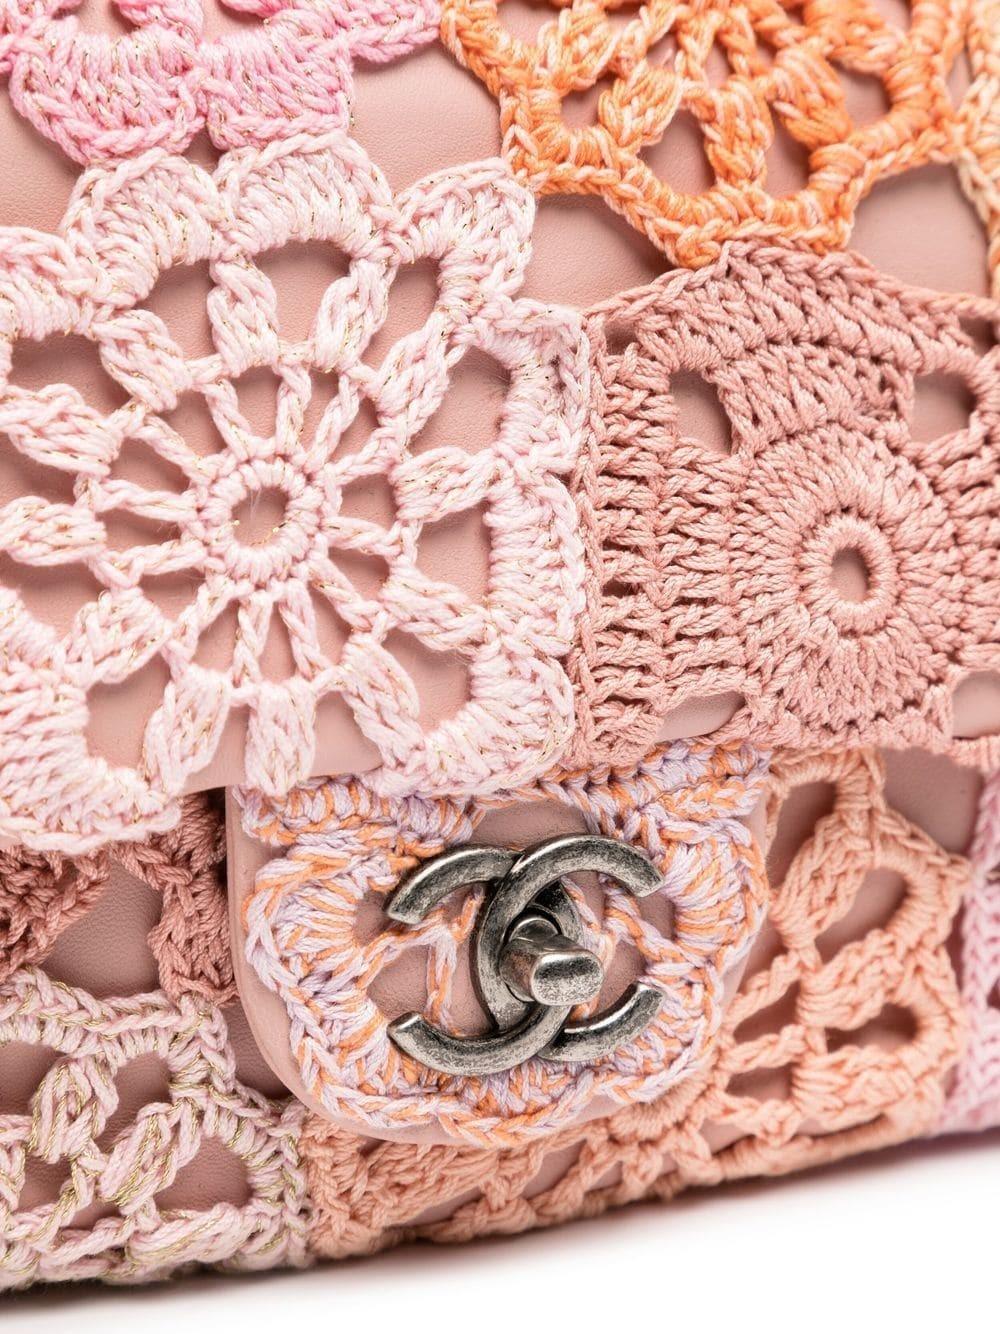 Datant du 16e siècle, ce sac à rabat de Chanel est une pièce maîtresse. Réalisé en cuir rose souple et orné d'une fleur au crochet, ce modèle est un clin d'œil au rabat classique. Les collections de croisière de Chanel contiennent certaines des